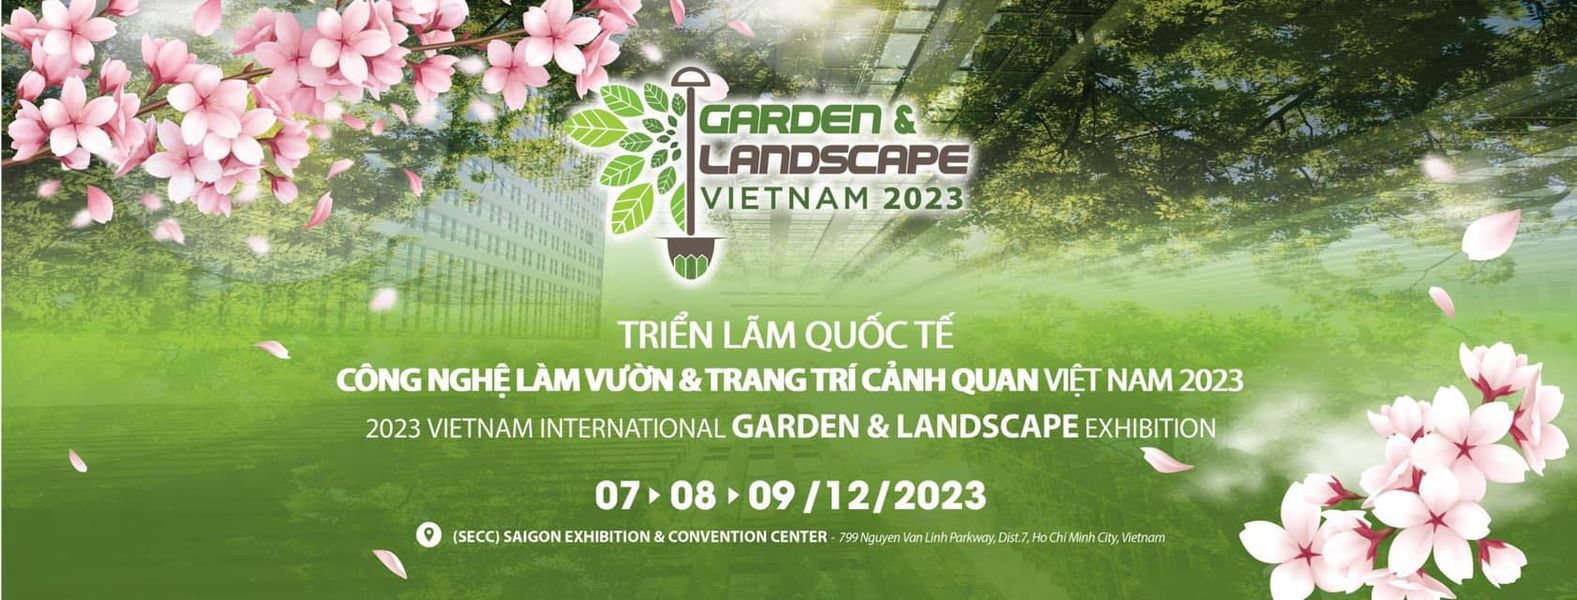 GARDEN & LANDSCAPE VIETNAM 2023 - Triển lãm quốc tế Công nghệ làm vườn, và Trang trí cảnh quan Việt Nam 2023